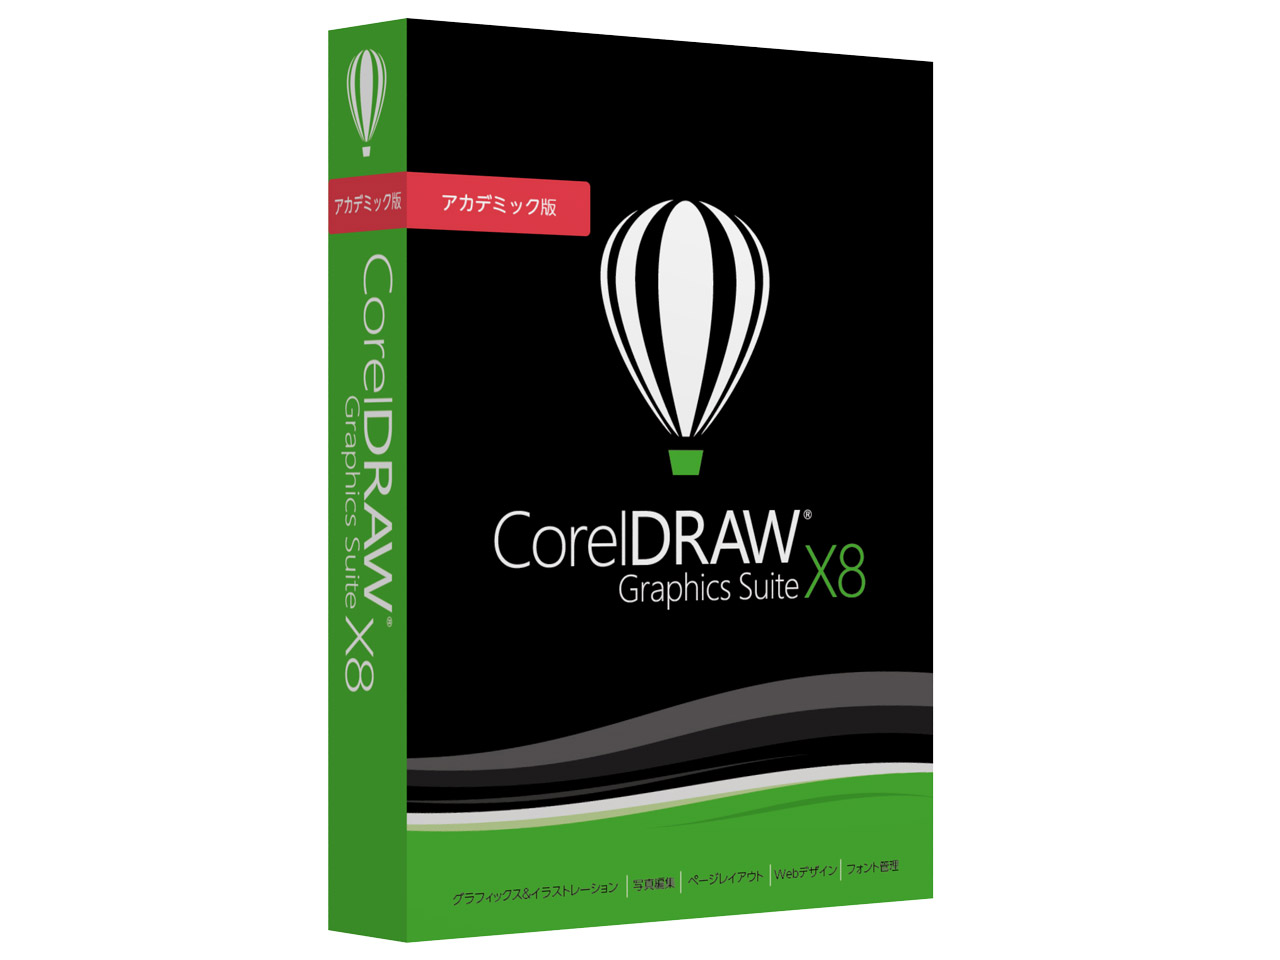 Corel suite. Coreldraw Graphics Suite. Coreldraw coreldraw Graphics Suite. Corel Graphics Suite. Coreldraw Graphics Suite иконка.